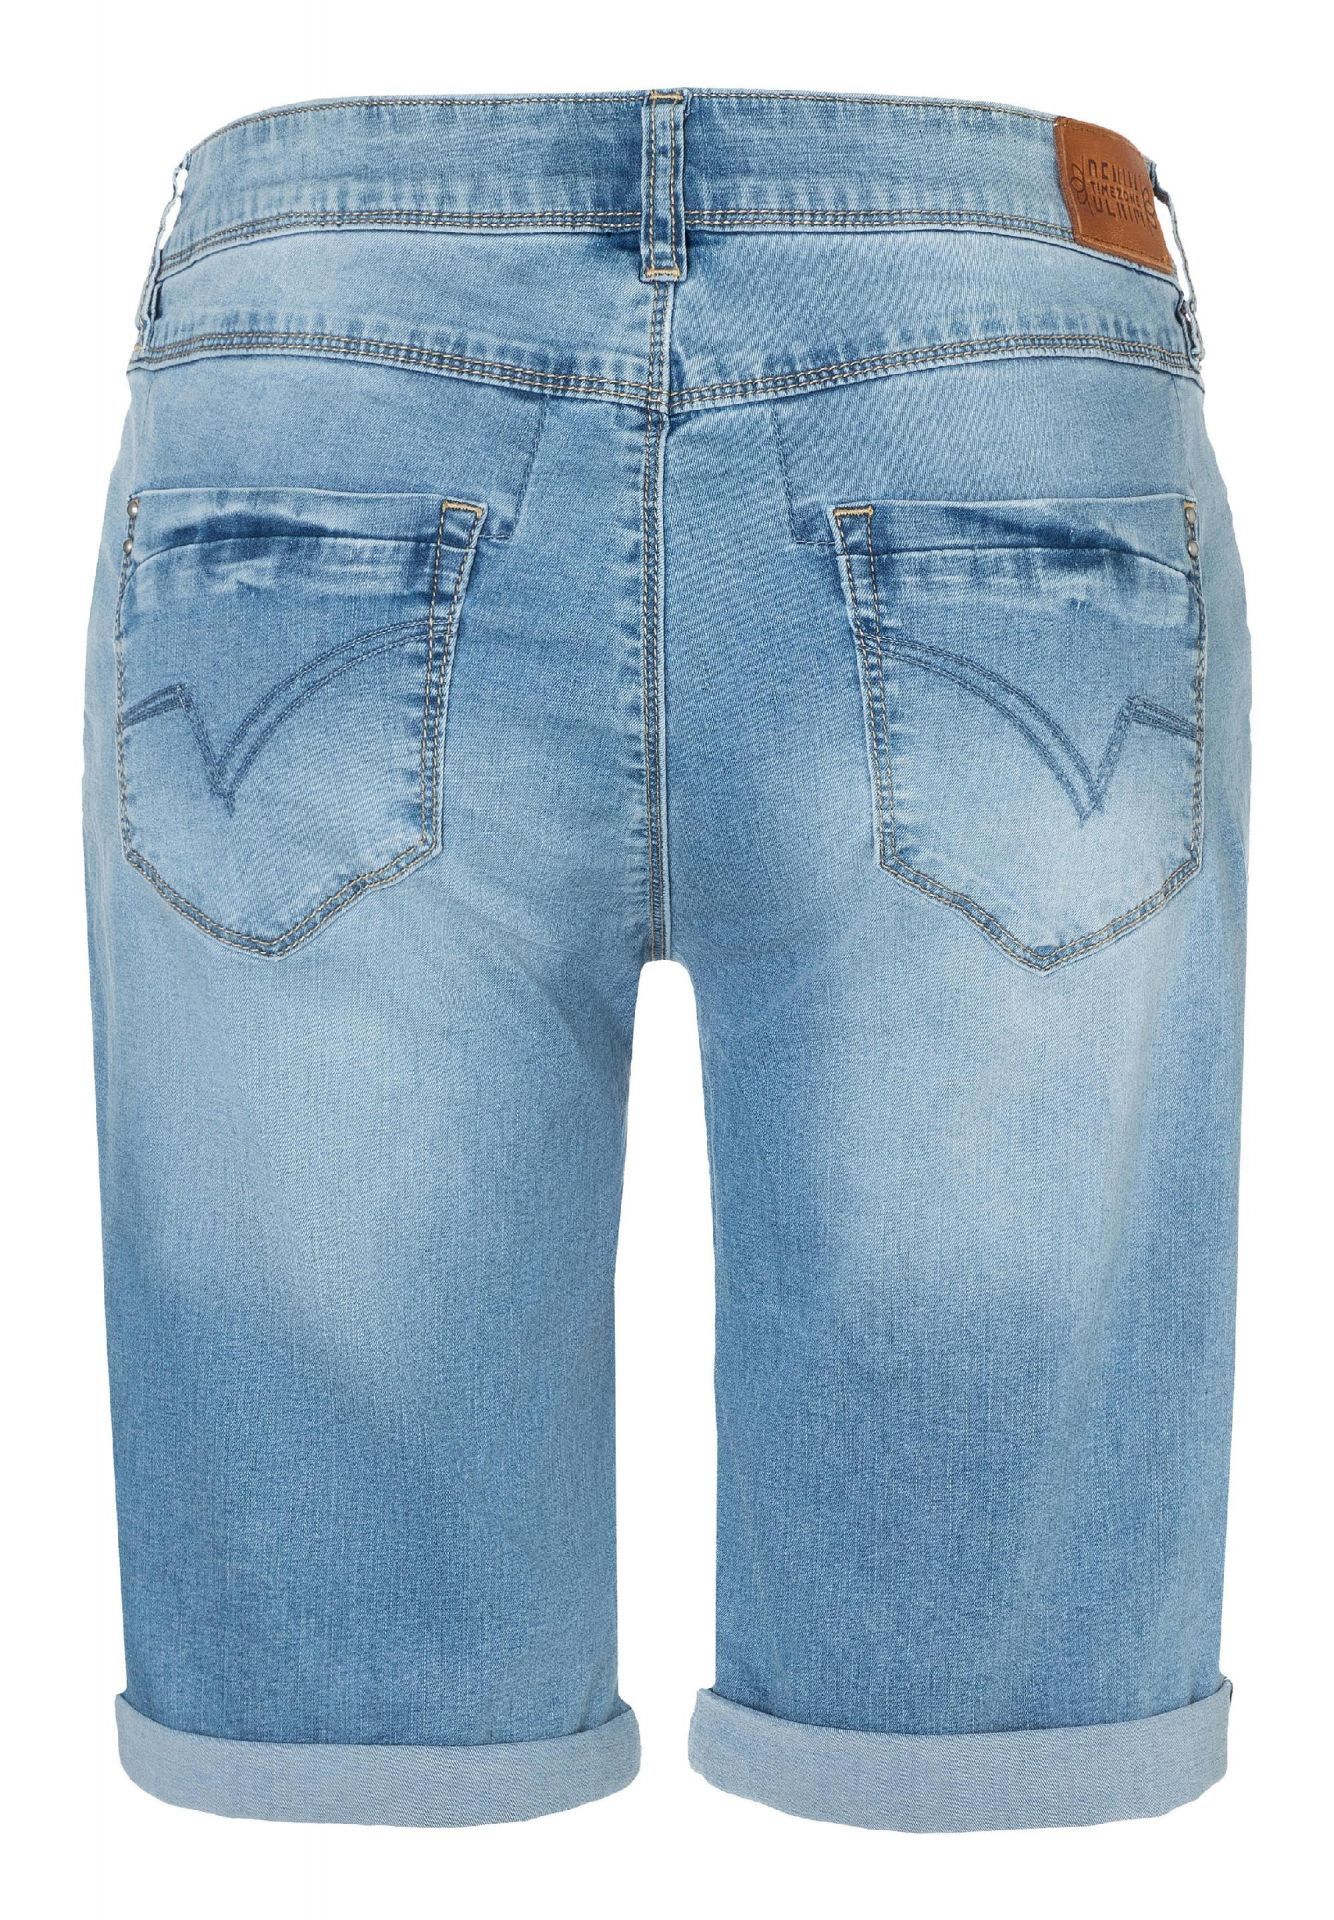 Menda City Gemeenten Snelkoppelingen Timezone dames jeans korte broek Nali online kopen?